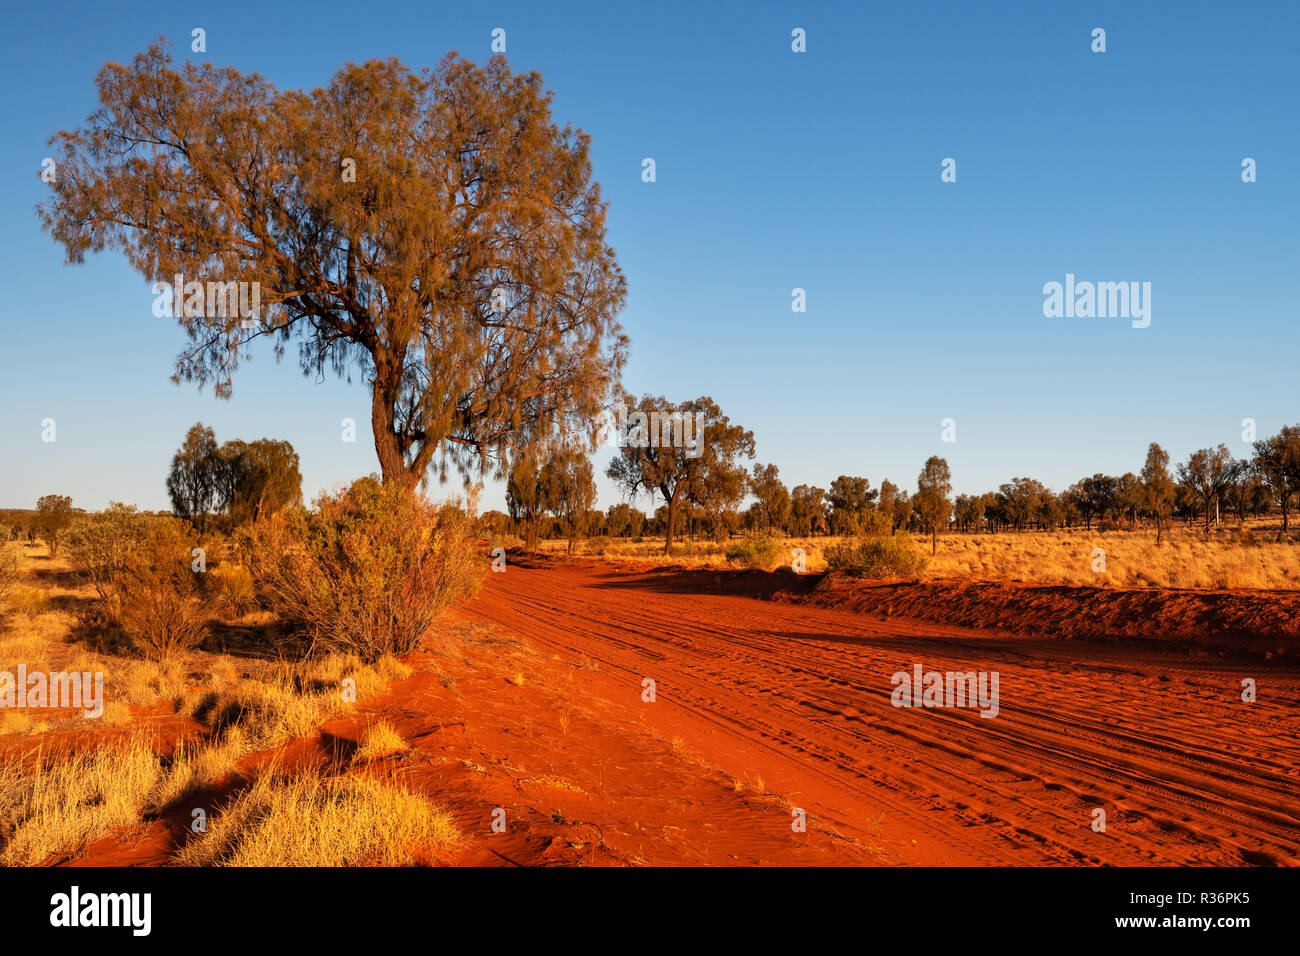 Red desert track with Desert Oaks in Central Australia. Stock Photo